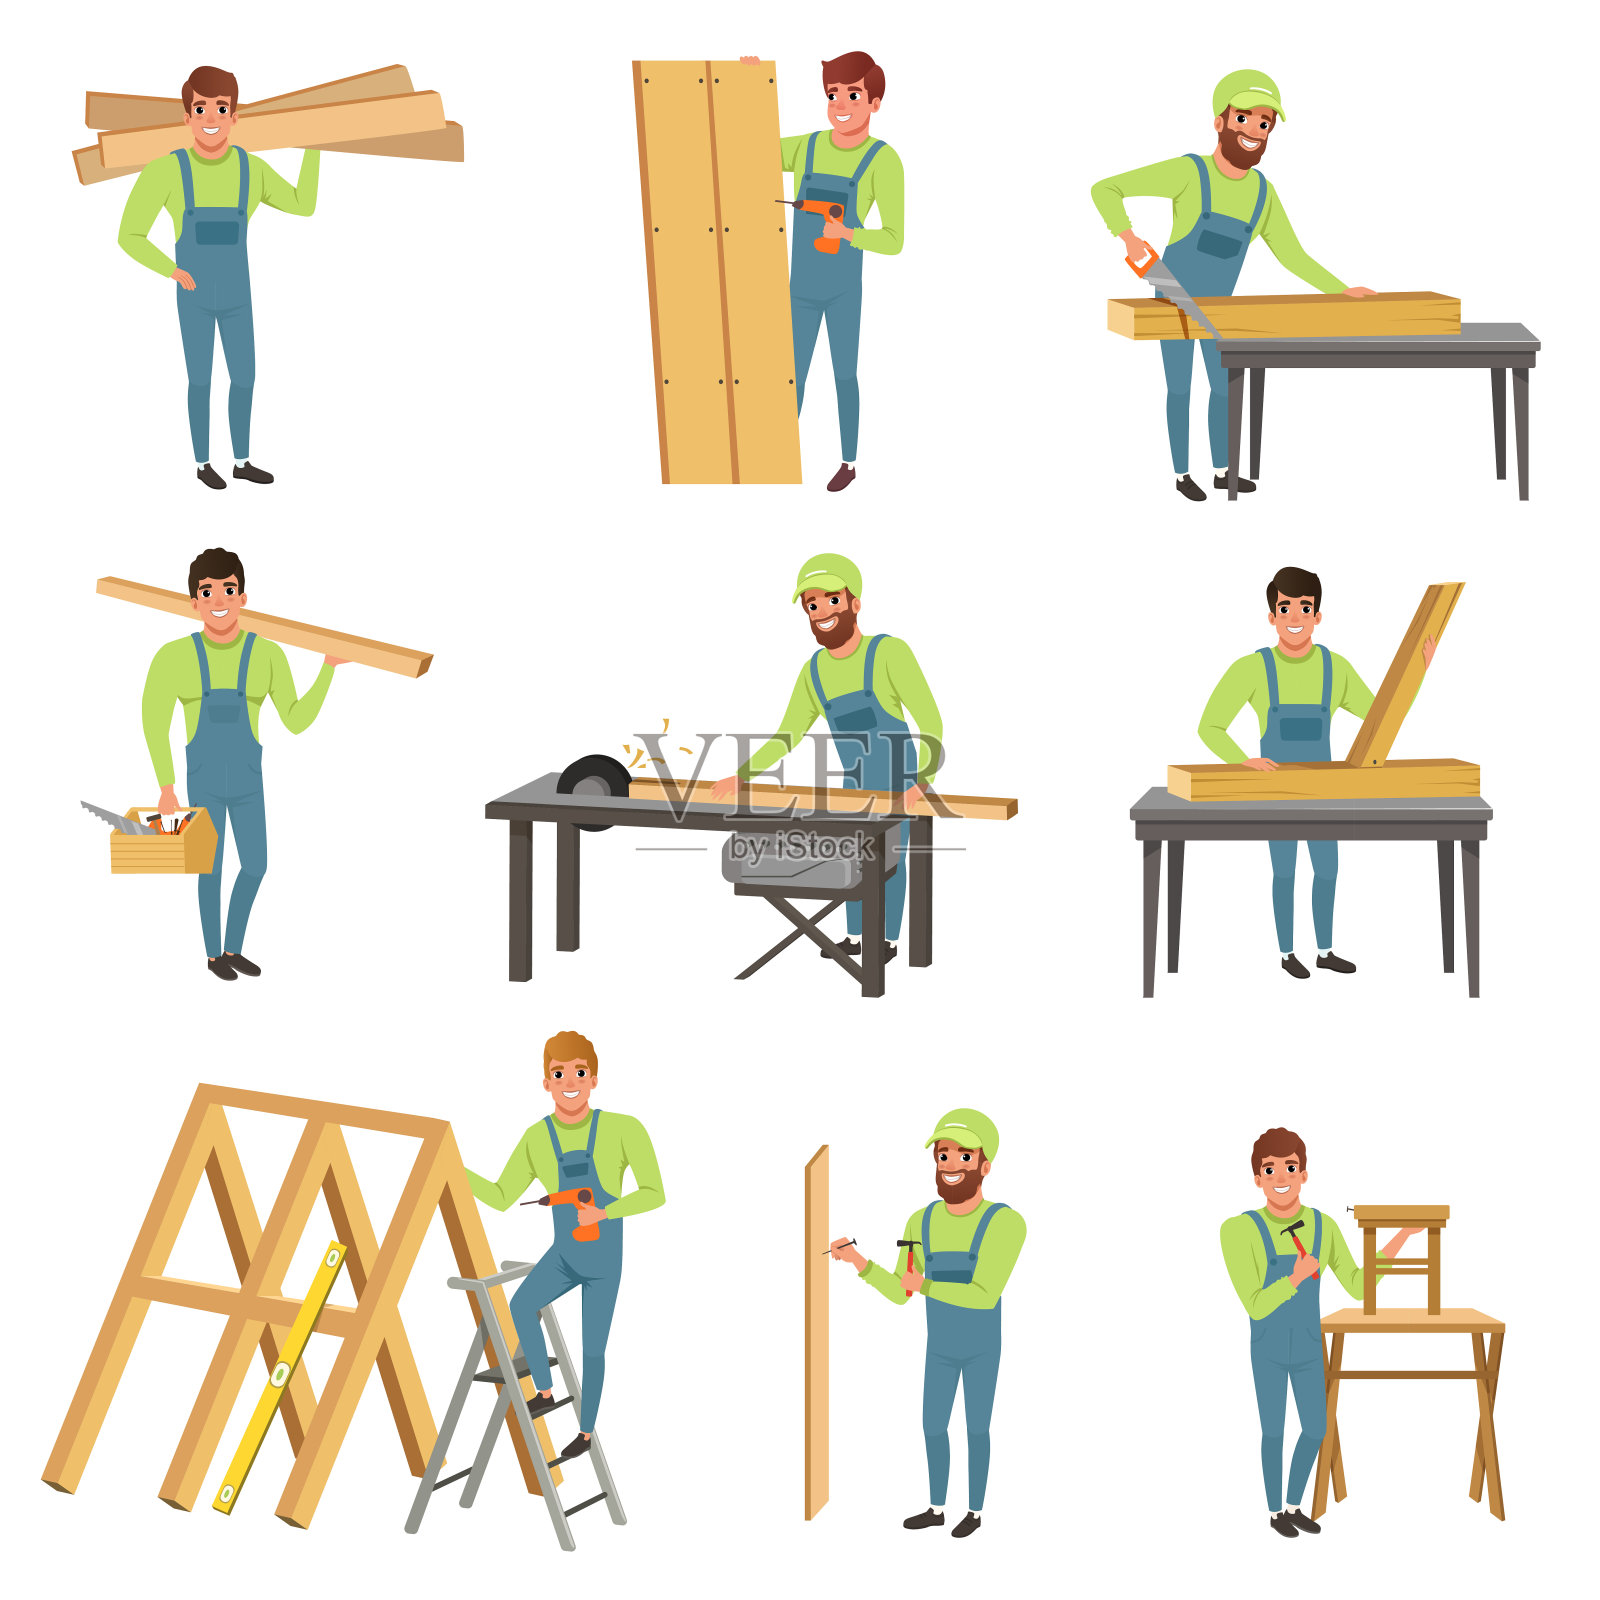 卡通的木匠角色在工作。有锯木和木工工具的人。穿着蓝色工作服的年轻人和木头一起工作。平面向量的设计插画图片素材